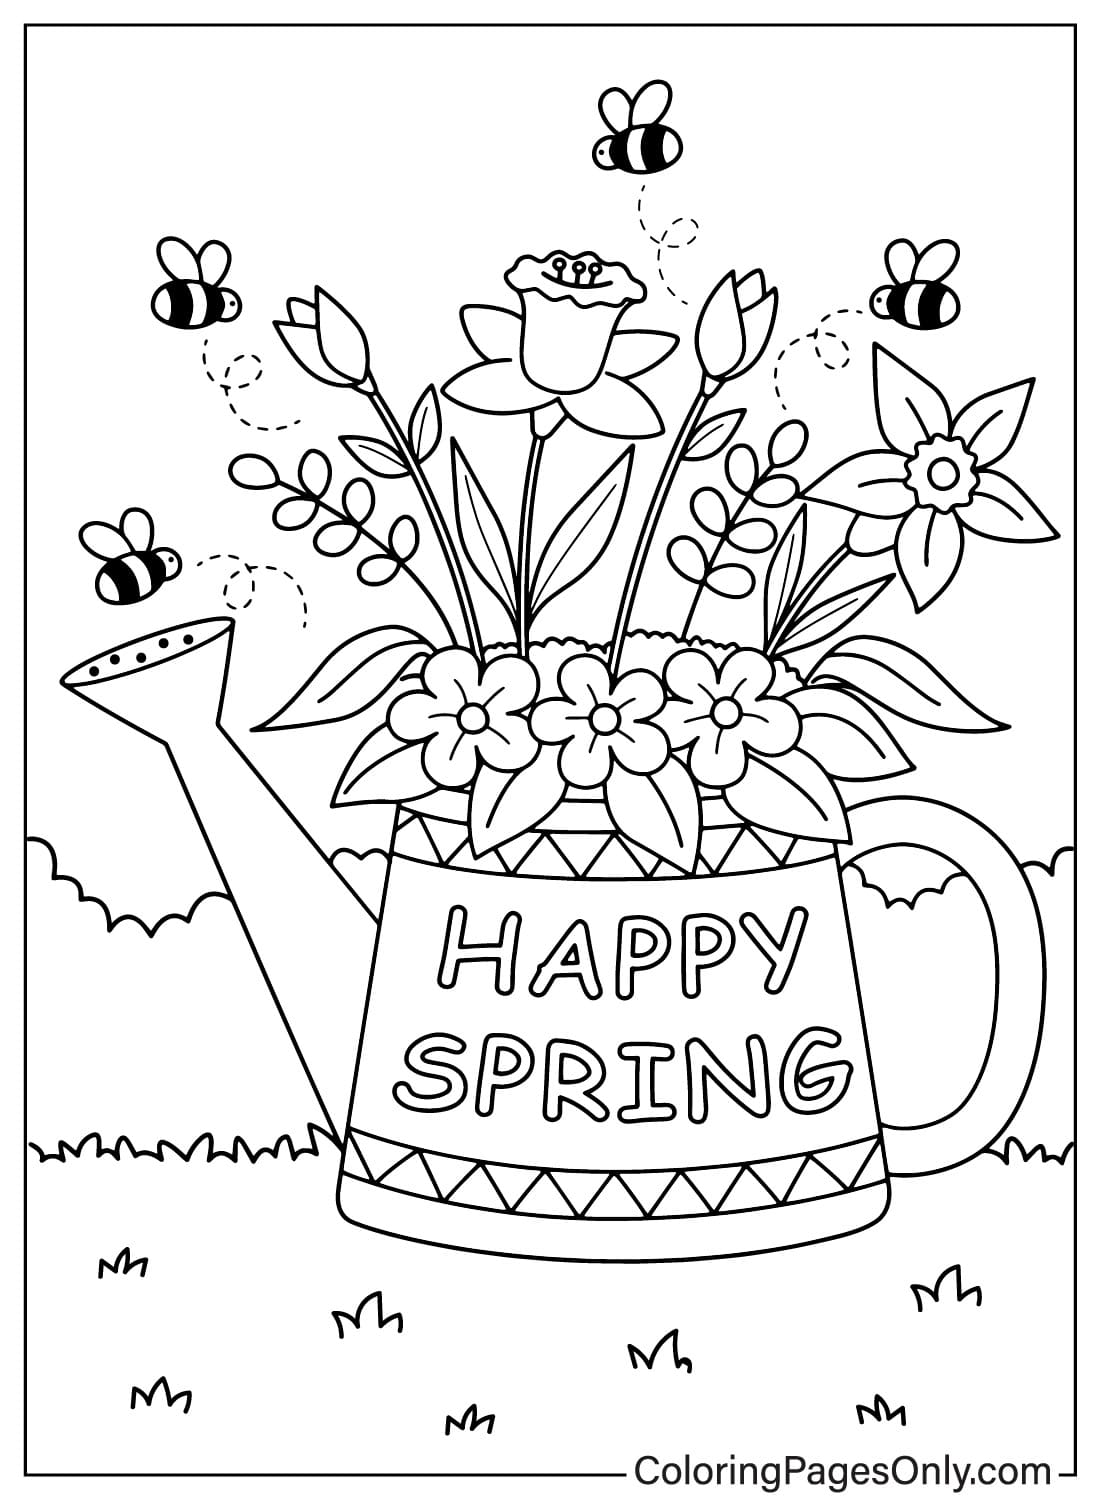 Цветные изображения страниц Весна